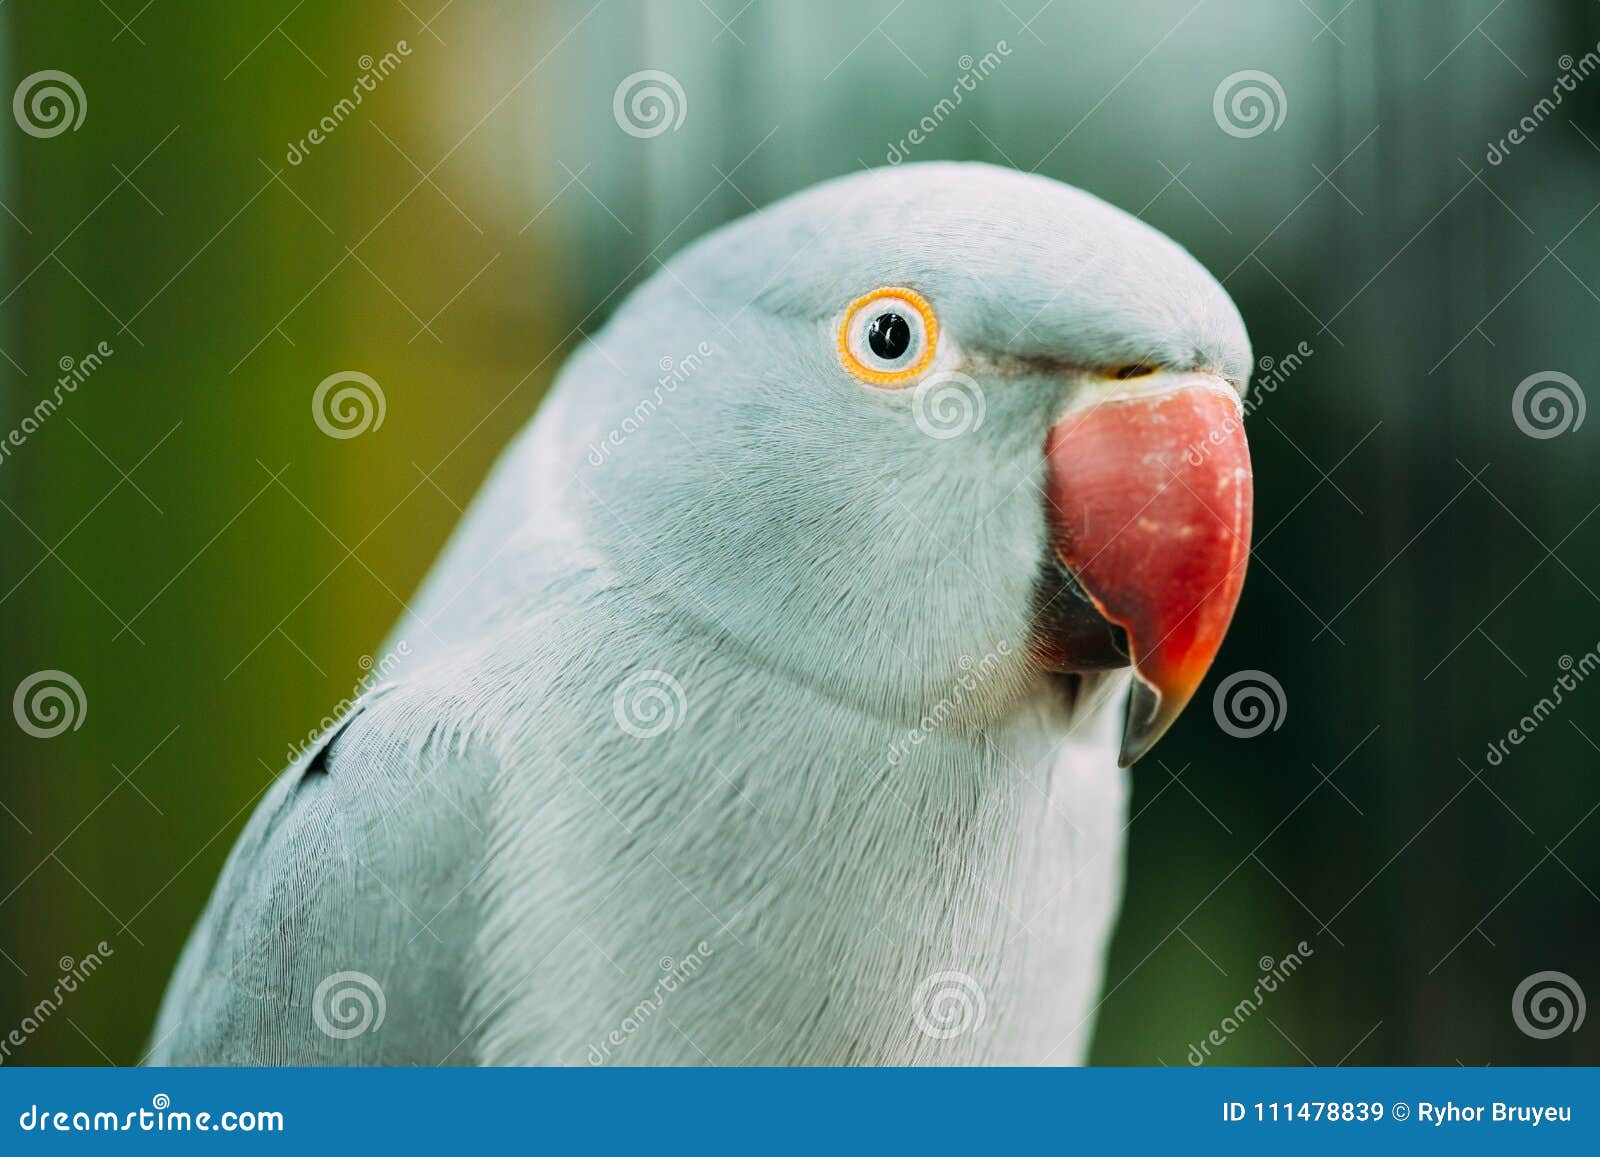 Yellow Ring-necked Parakeet